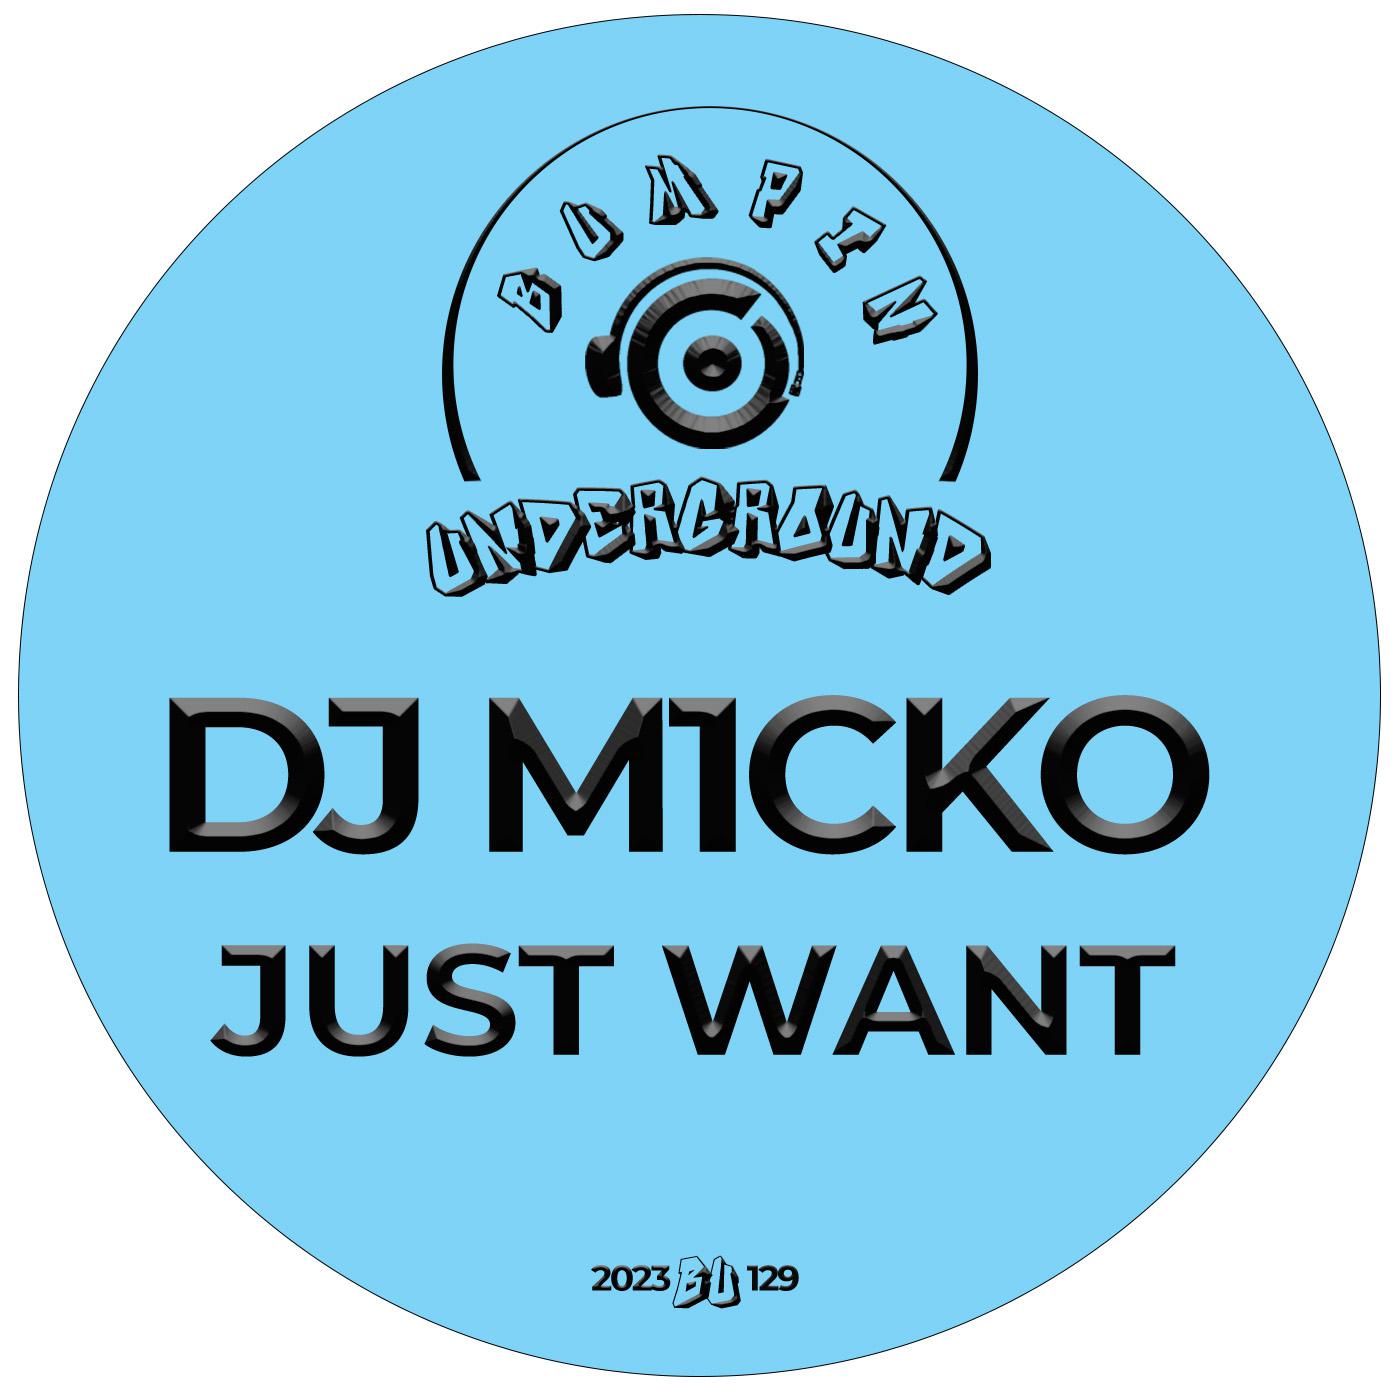 Dj M1cko - Just Want